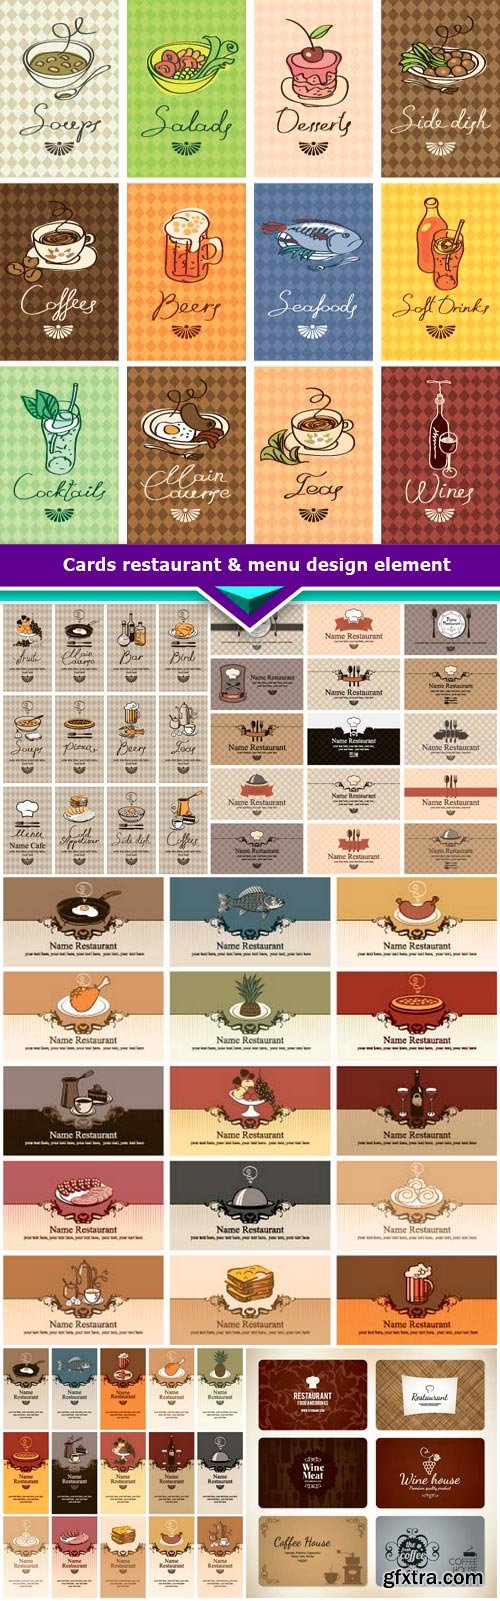 Cards restaurant & cafe design element 6x EPS